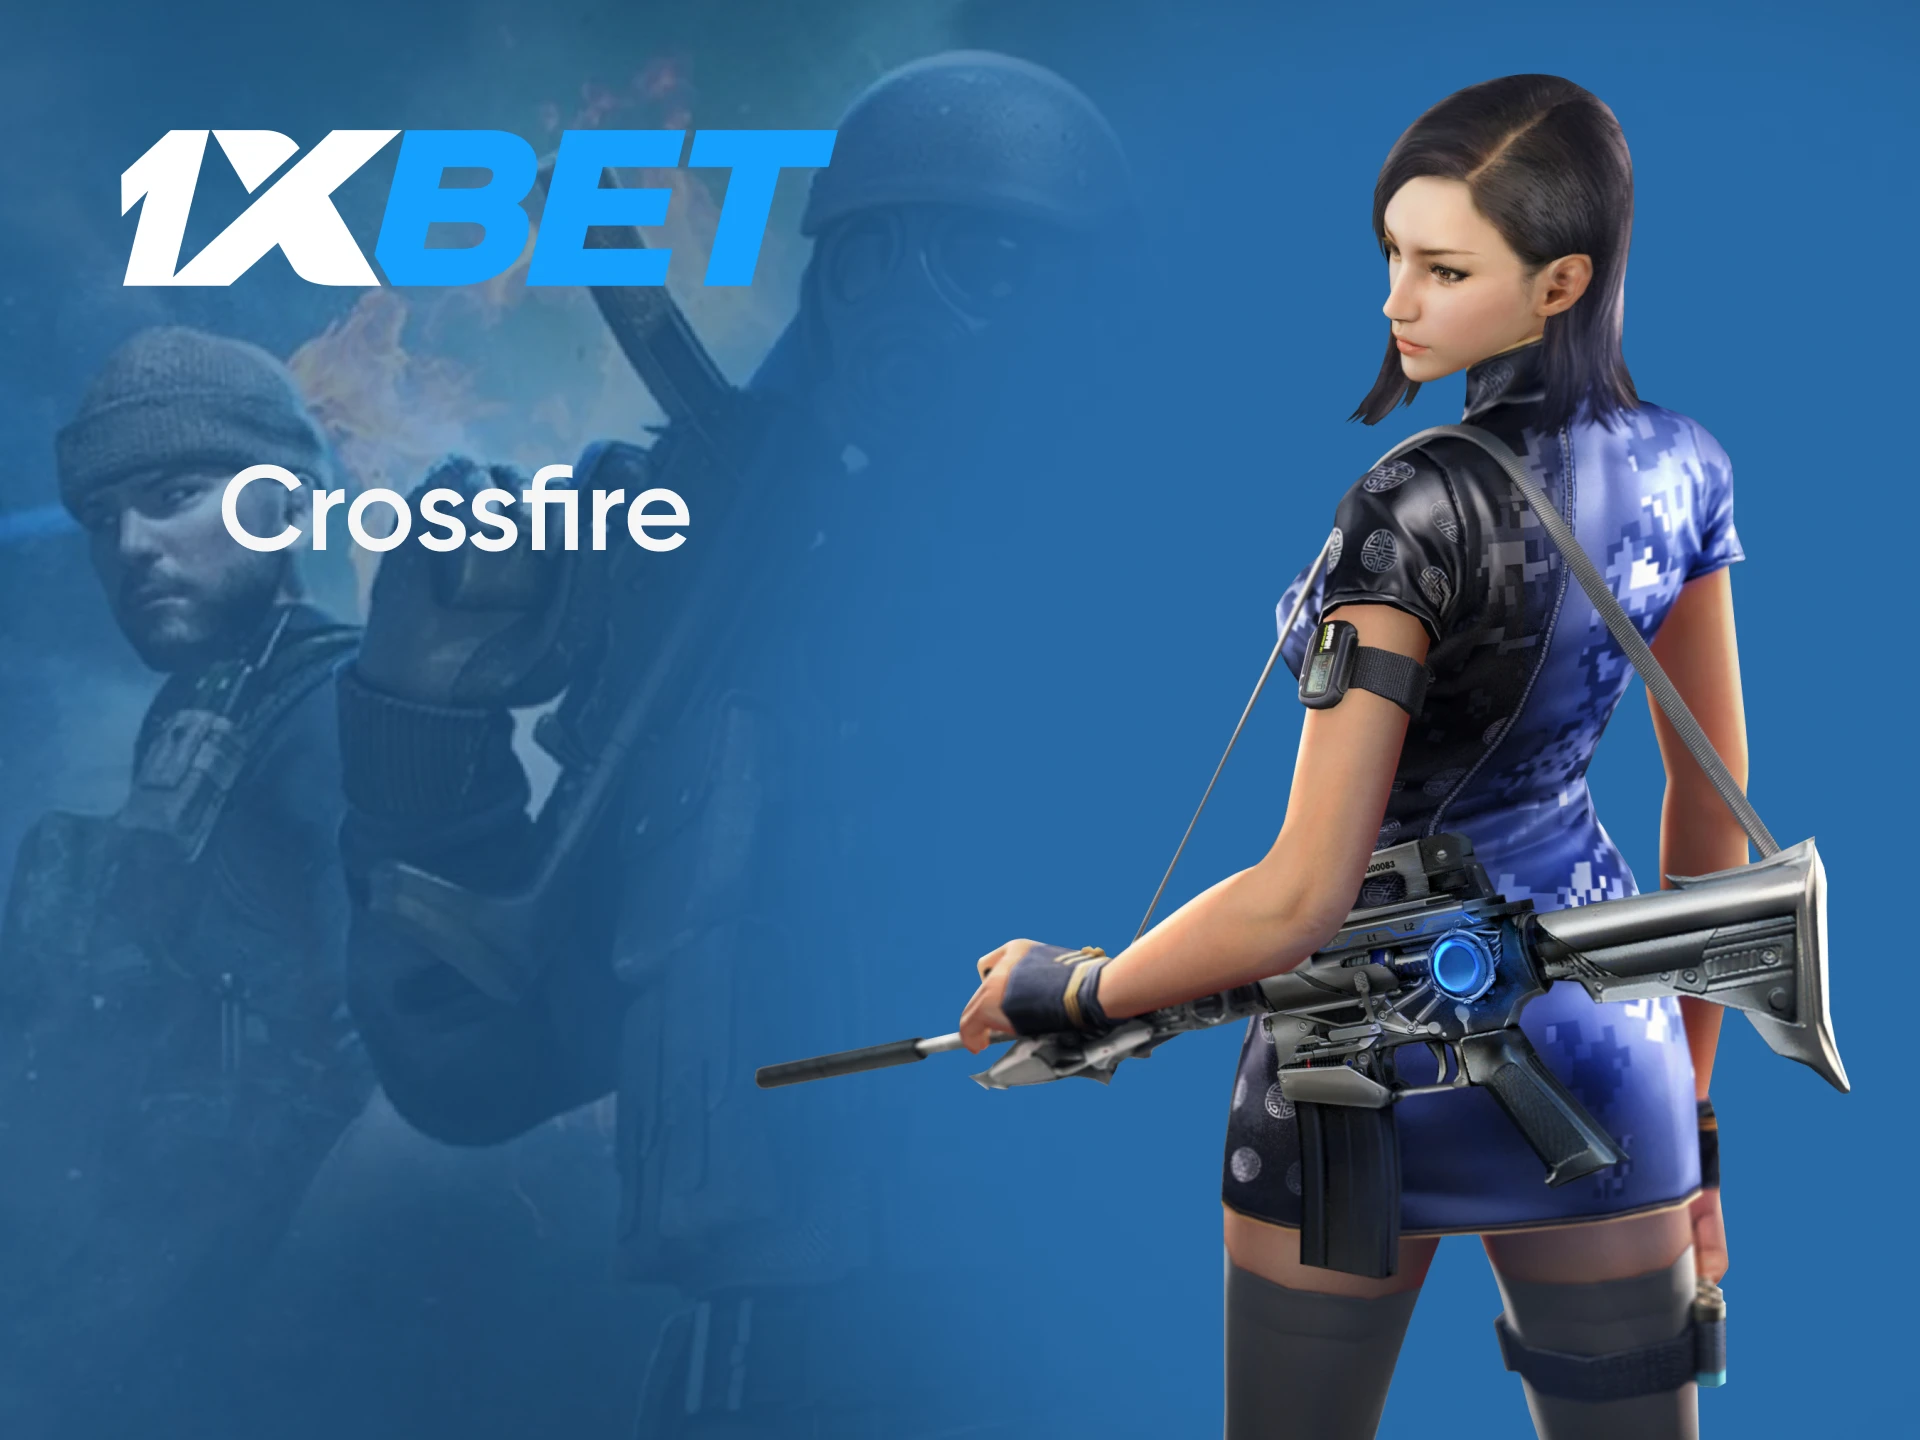 Para apostas em eSports da 1xbet, escolha CrossFire.